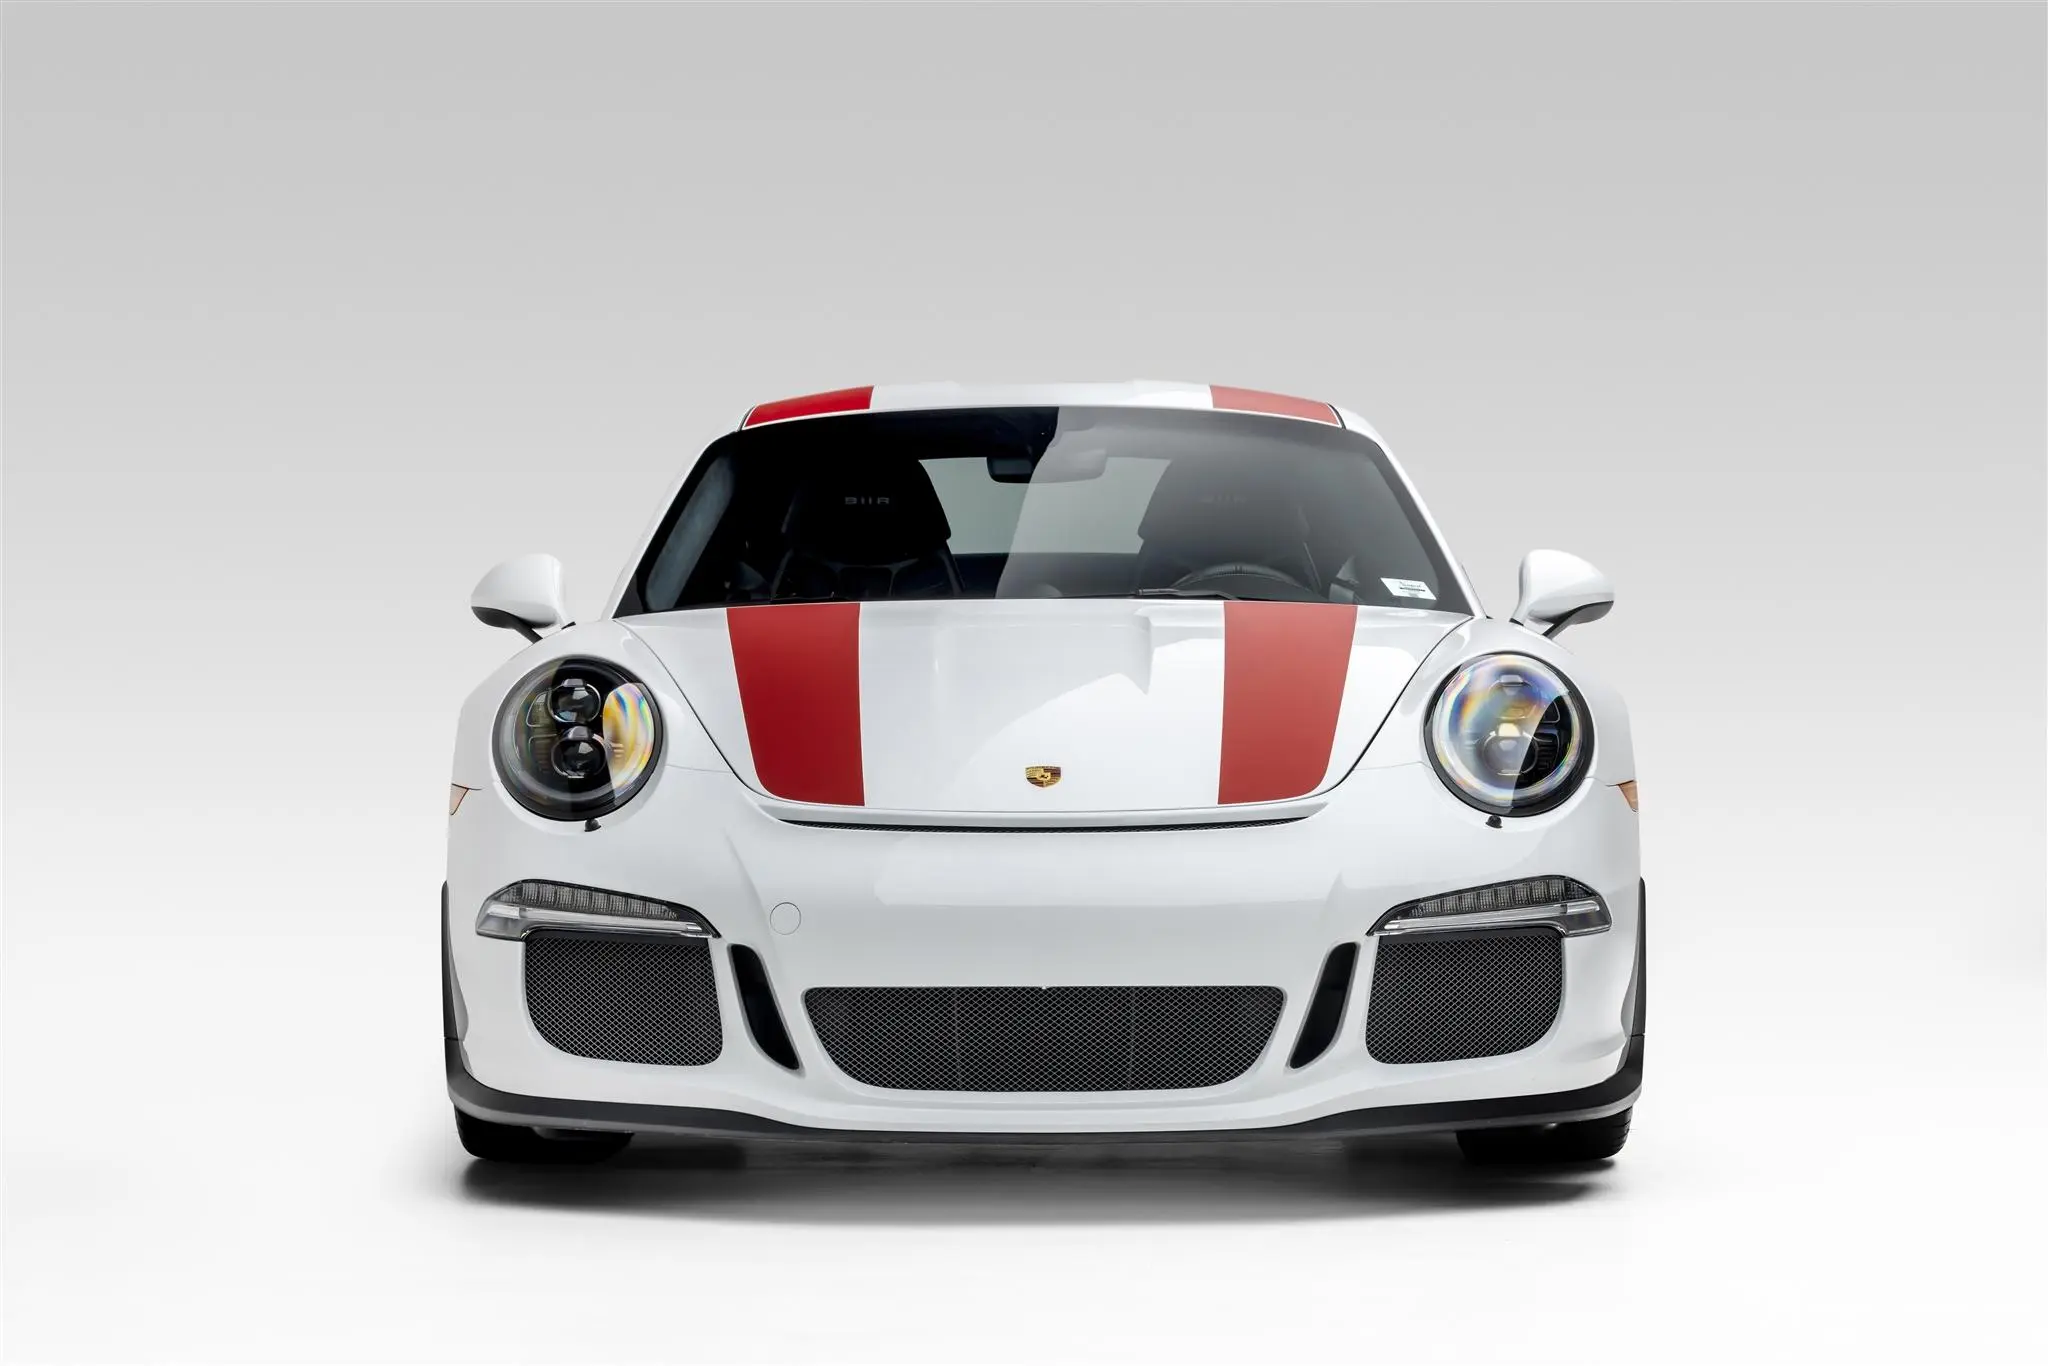 Low Mileage 2016 Porsche 911 R Now Up For Auction